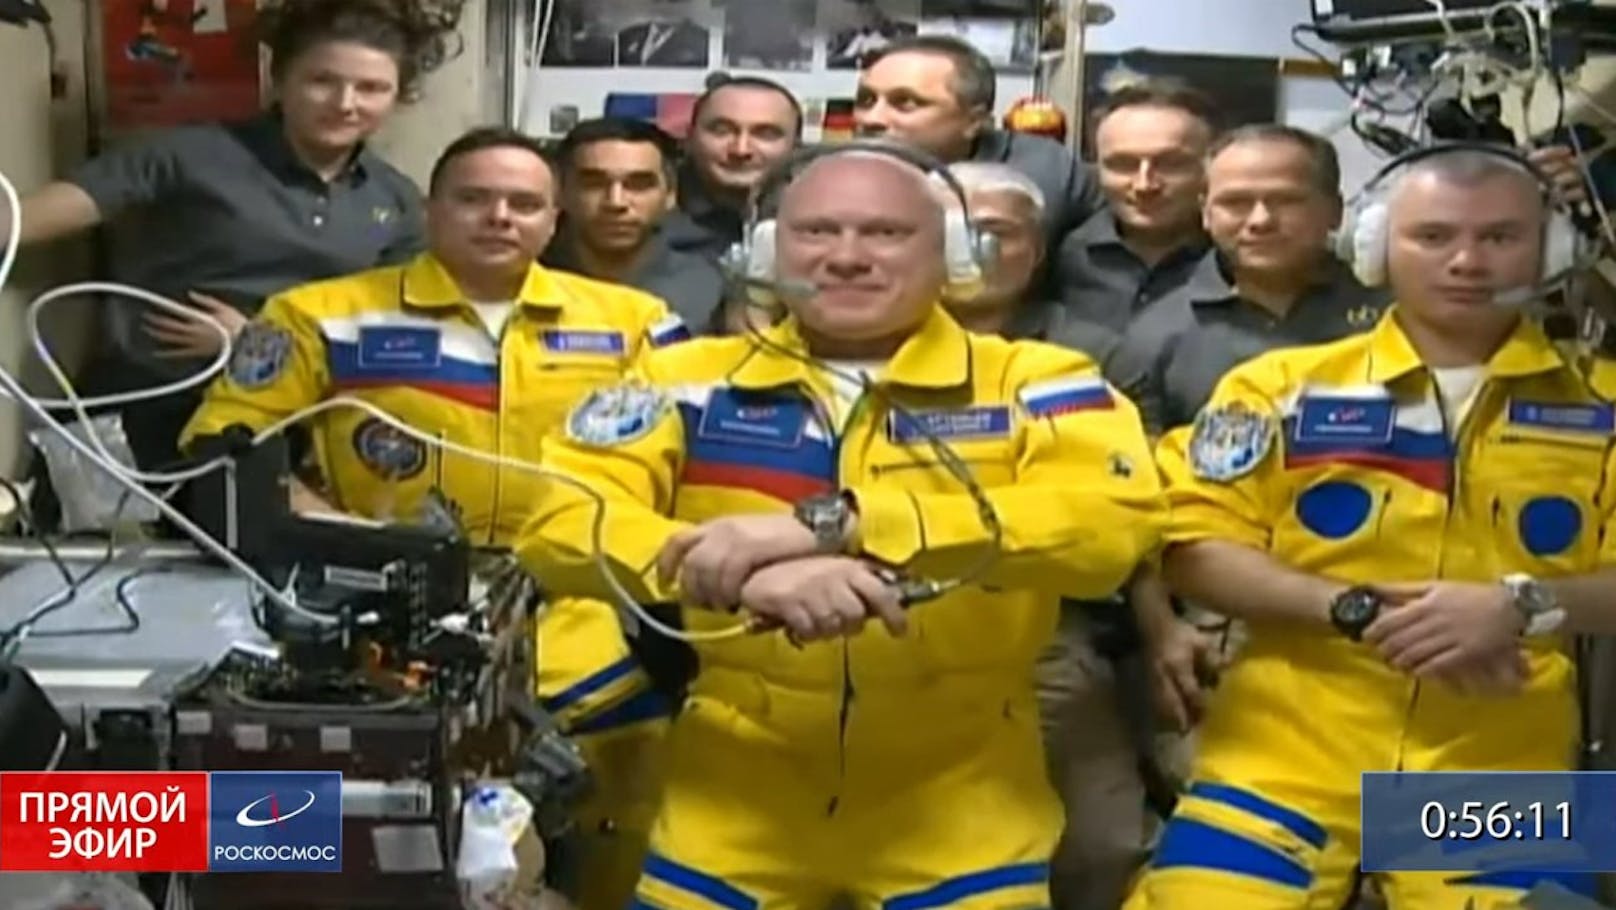 Darum sind Anzüge der russischen Kosmonauten gelb-blau